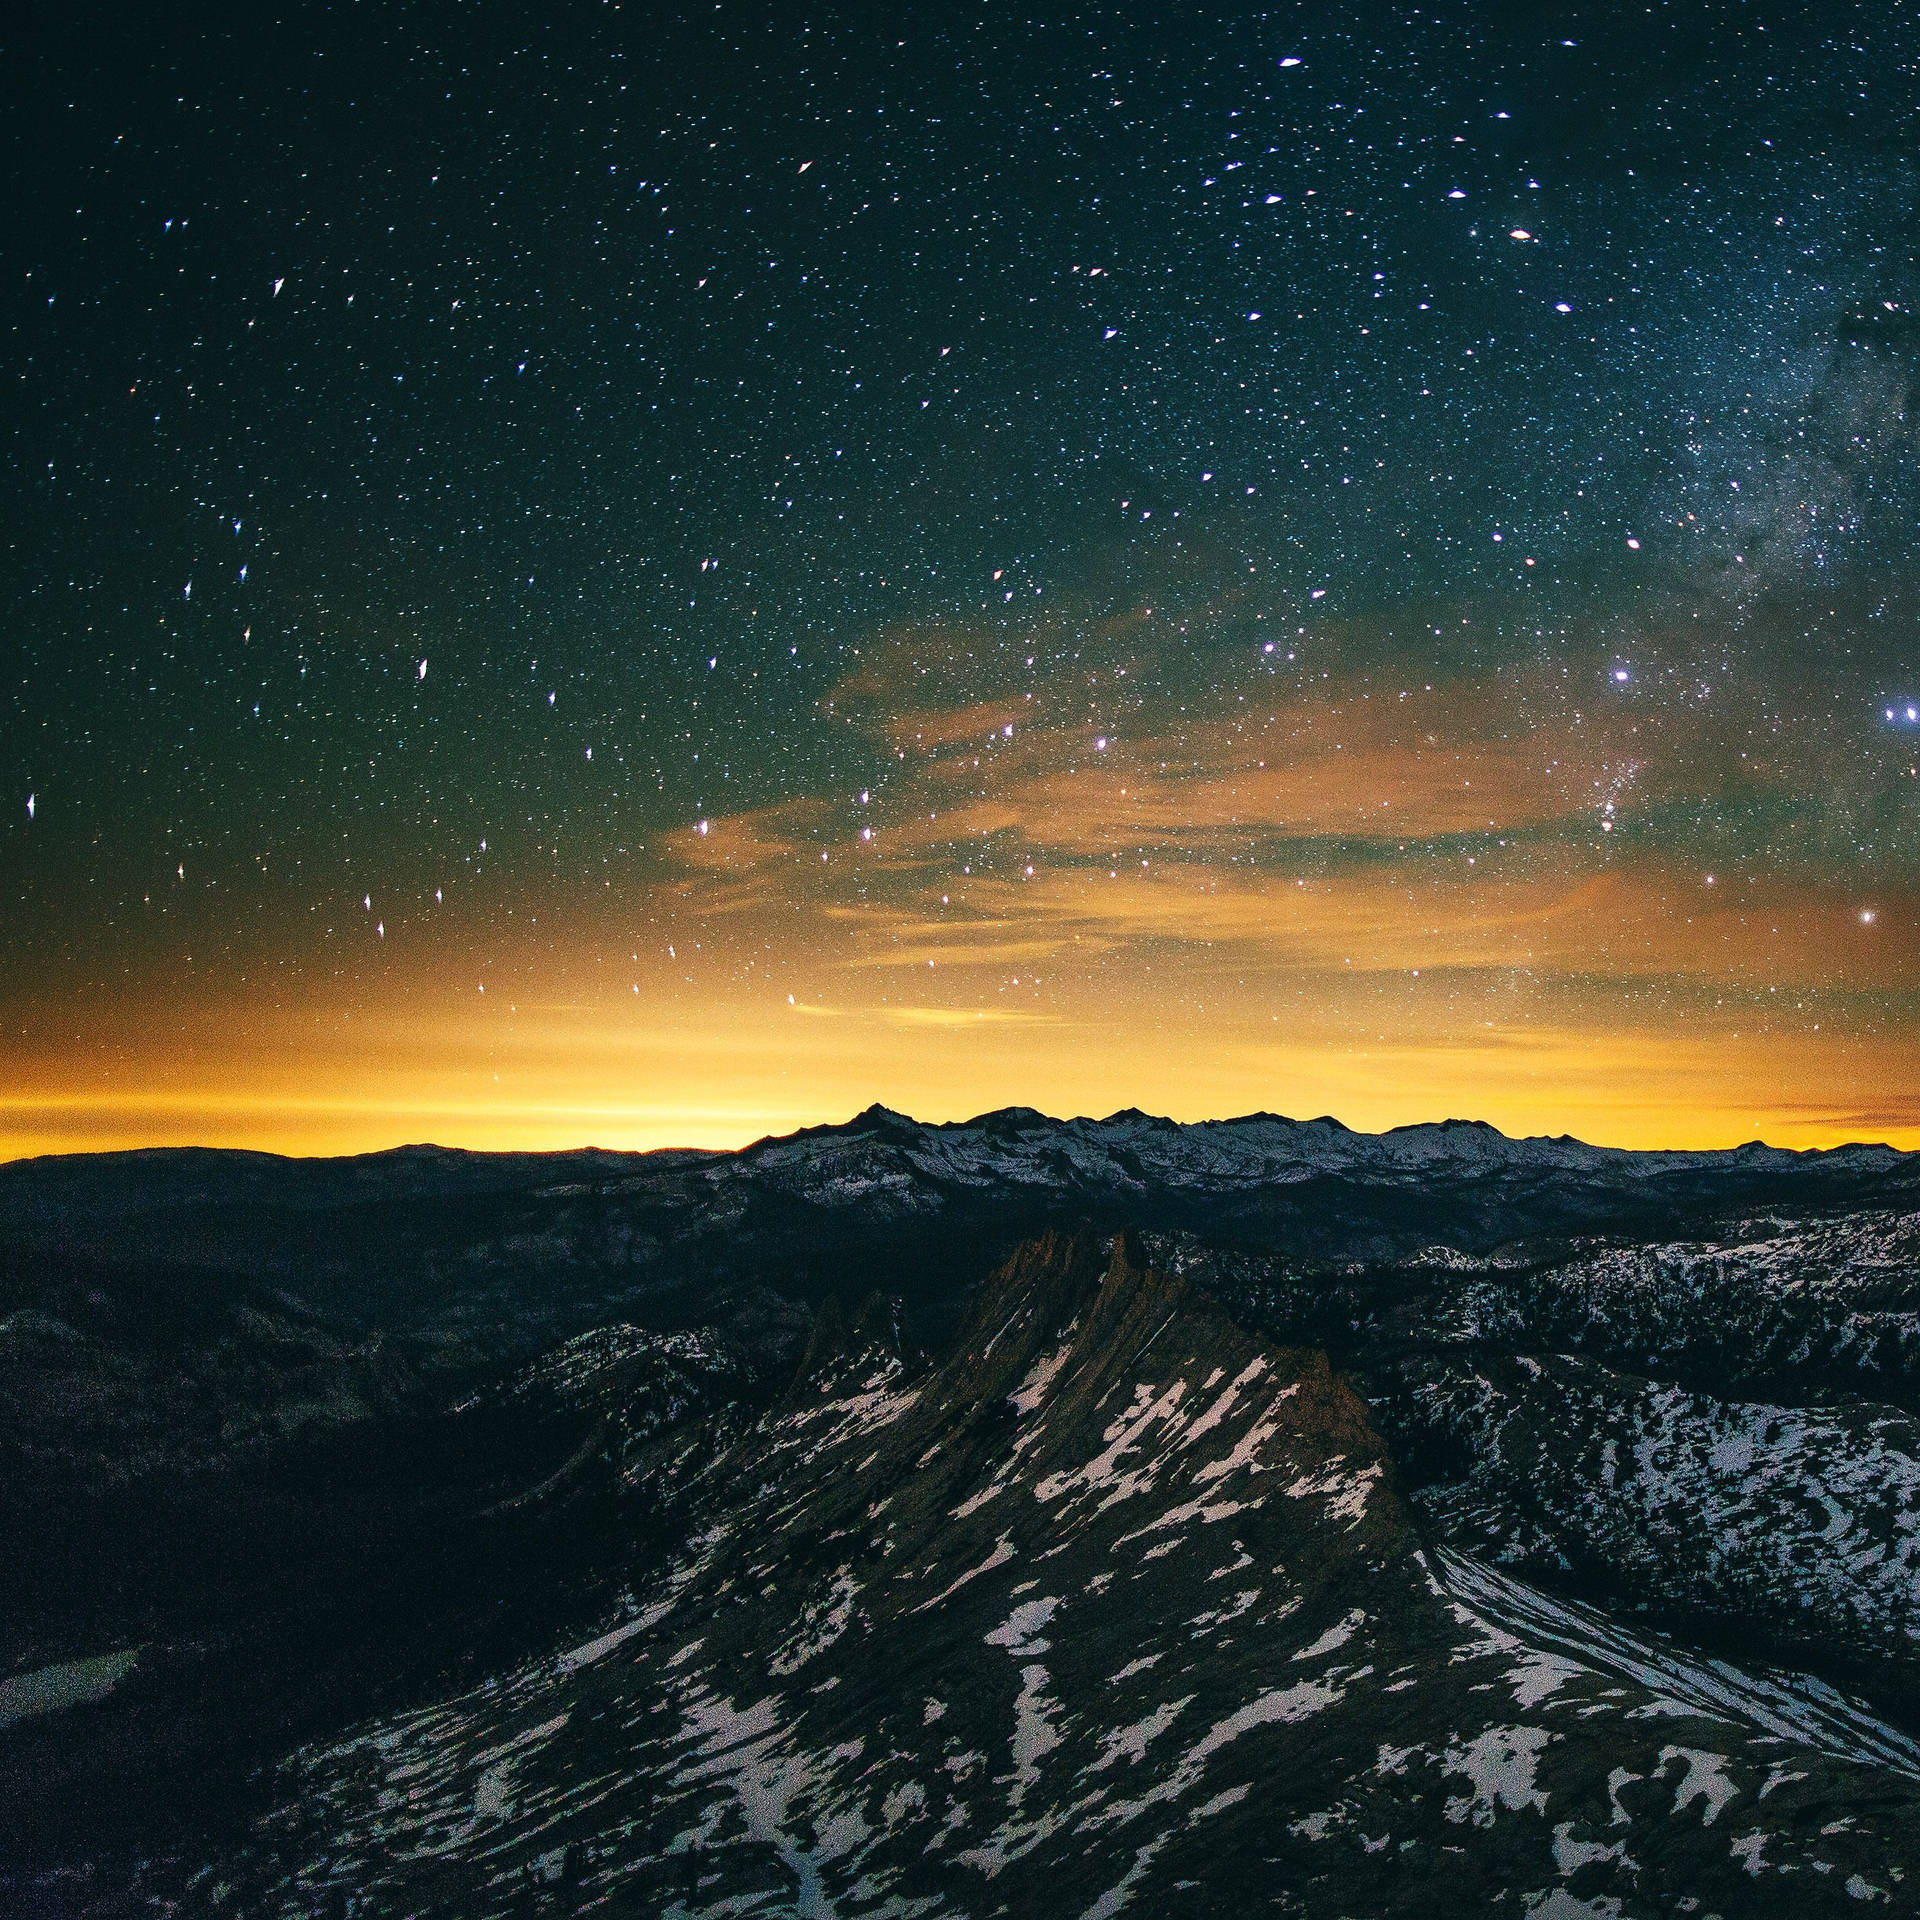 Ipad Pro Starry Sunset On Mountains